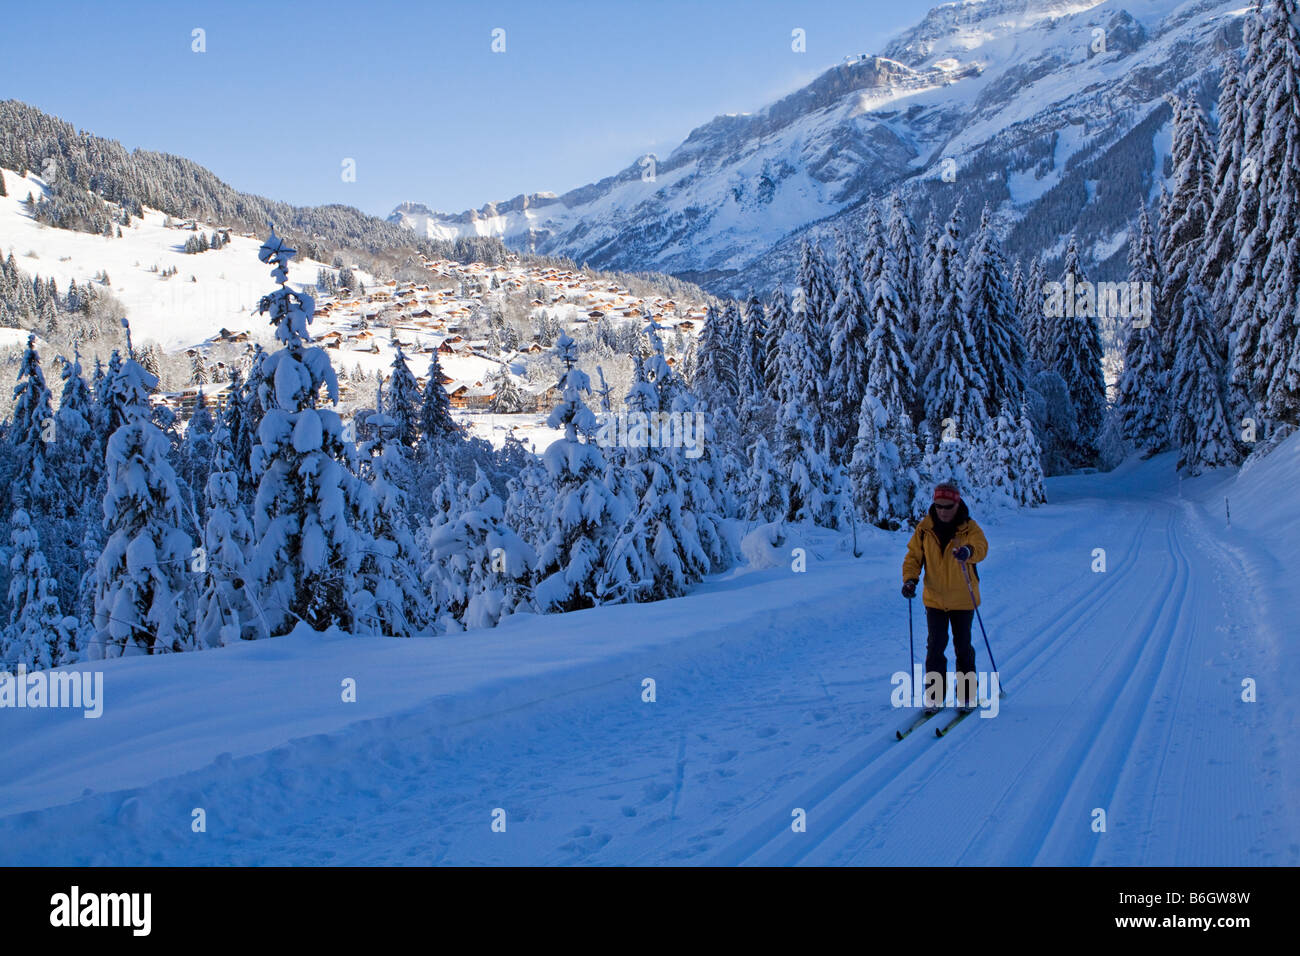 Le ski de fond dans le village des Diablerets, Suisse Banque D'Images